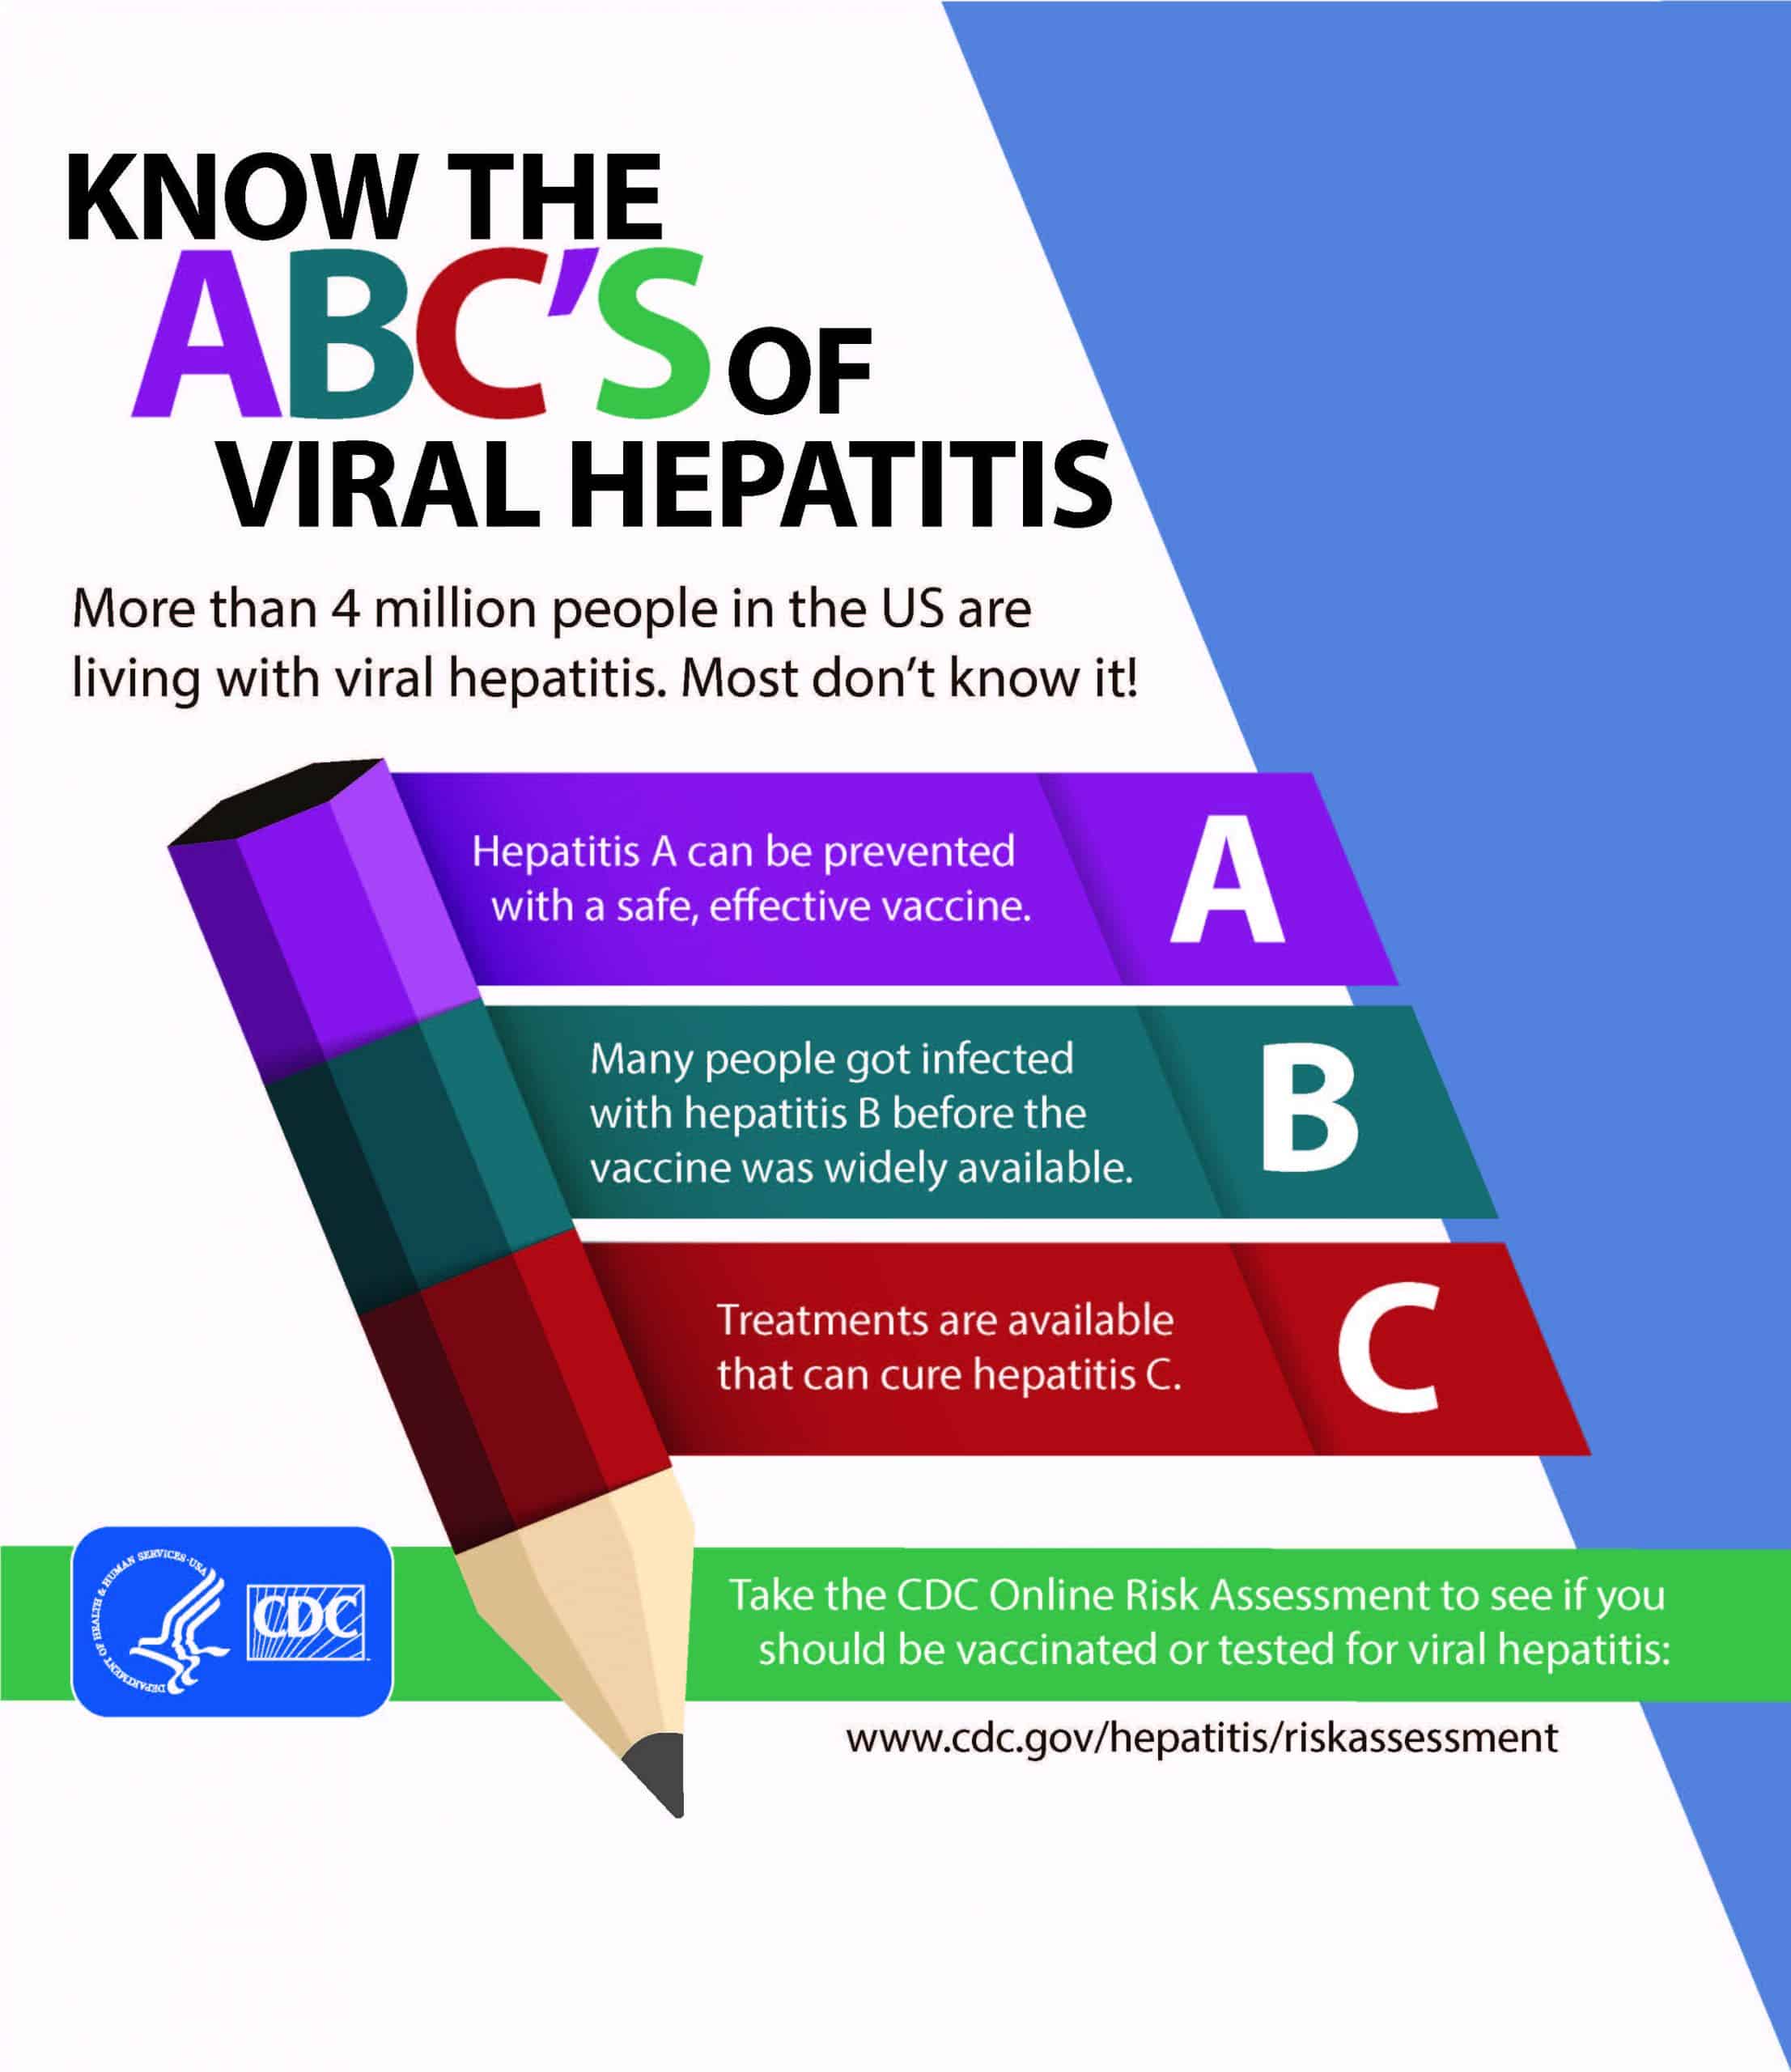 How To Prevent Hepatitis C